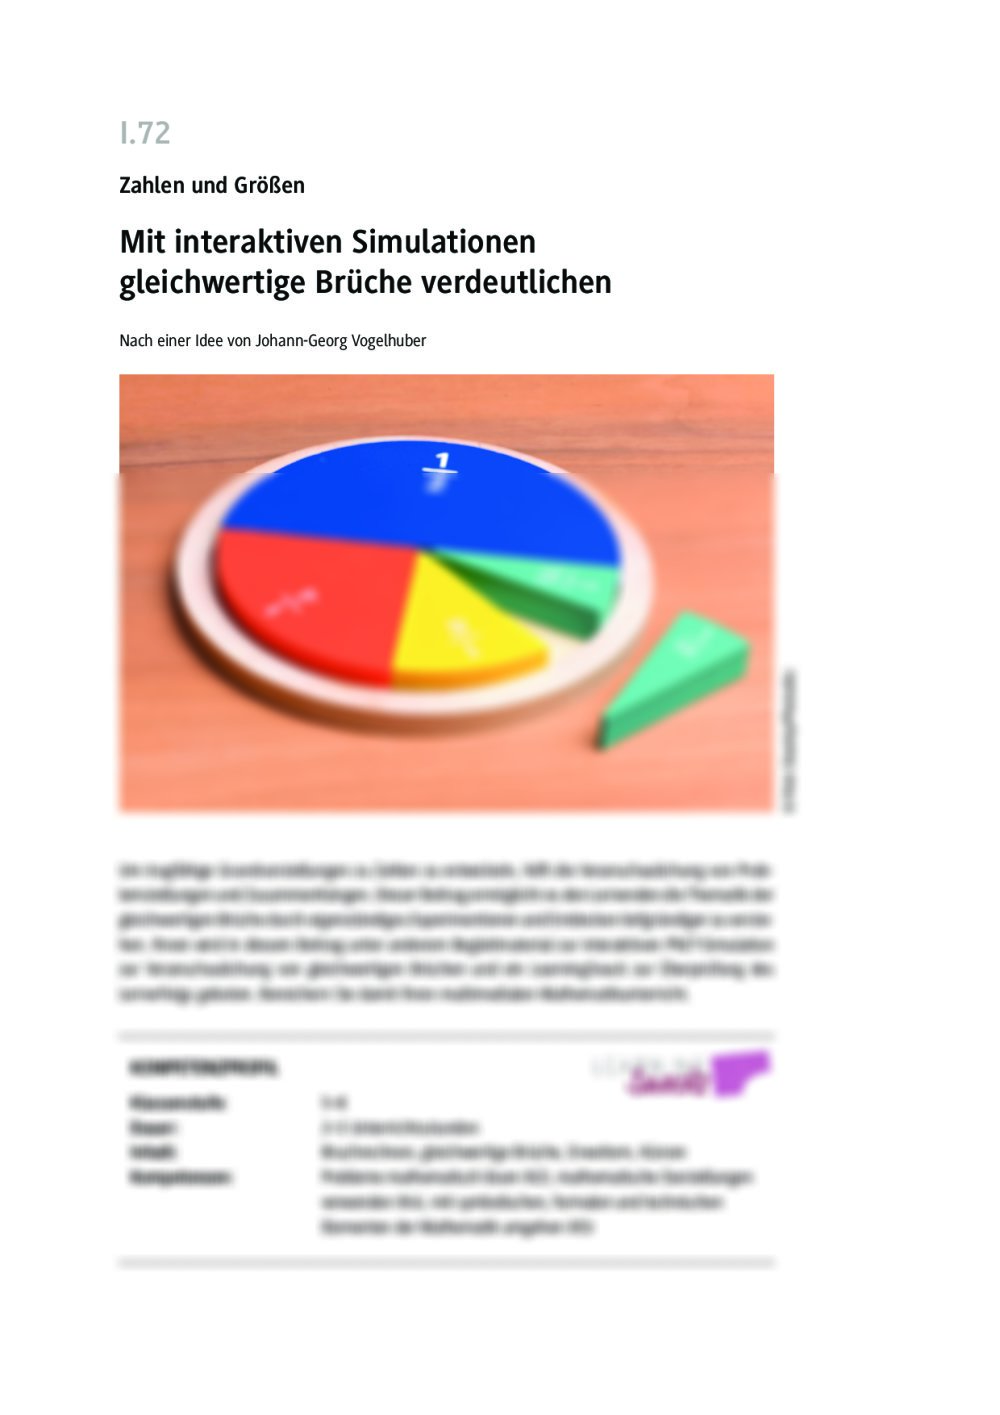 Mit interaktiven Simulationen gleichwertige Brüche verdeutlichen - Seite 1